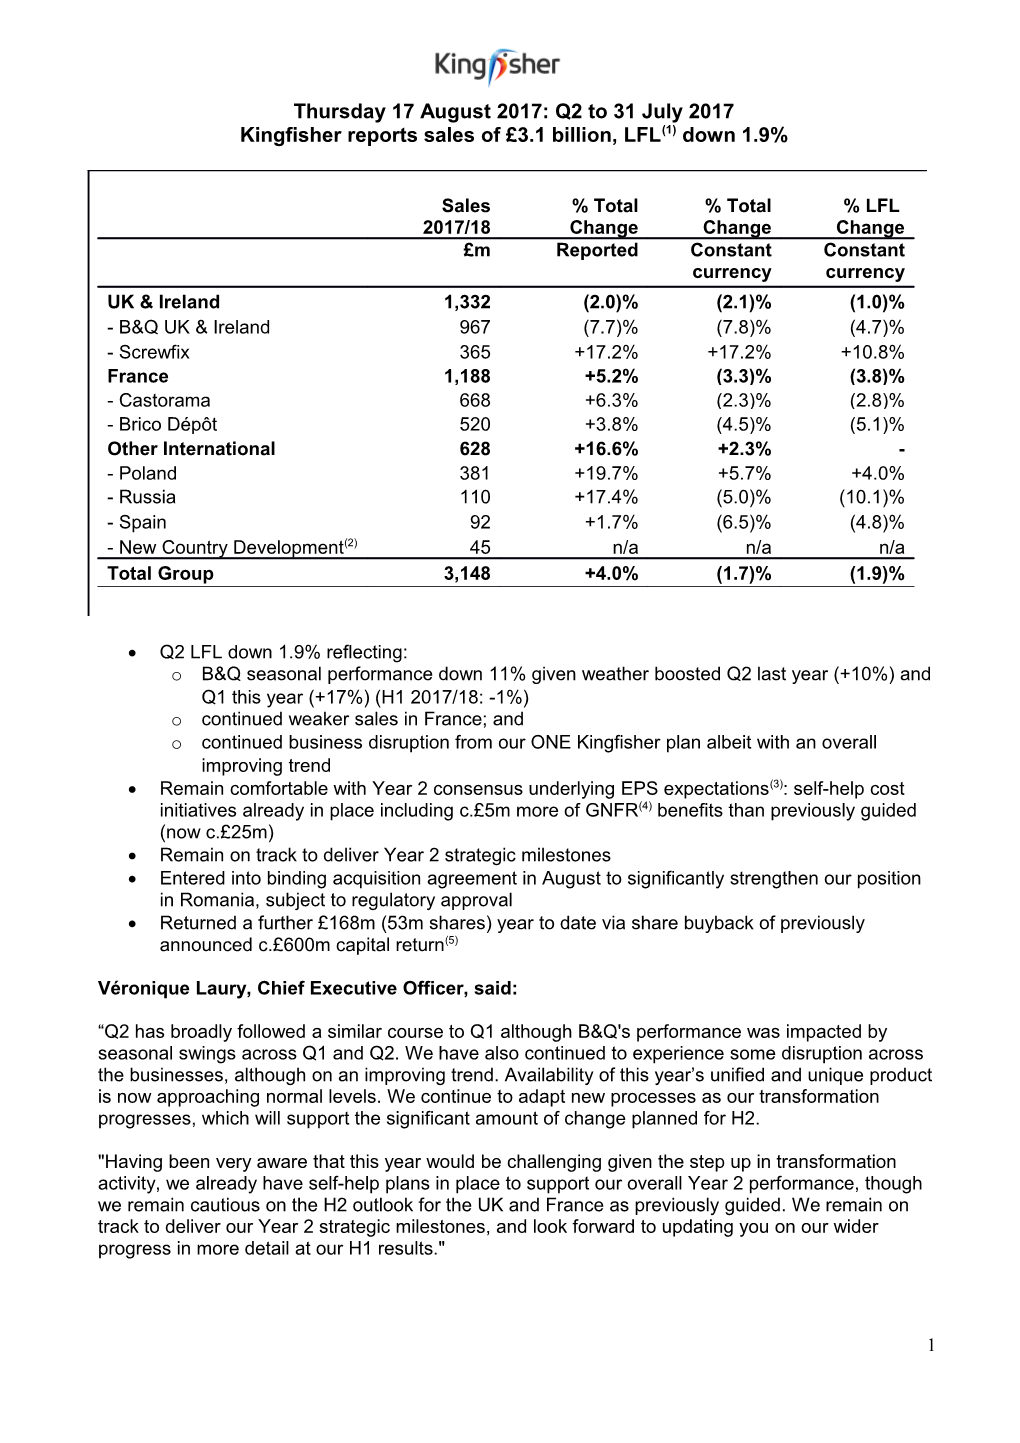 Kingfisher Reports Sales of 3.1Billion, LFL(1) Down 1.9%